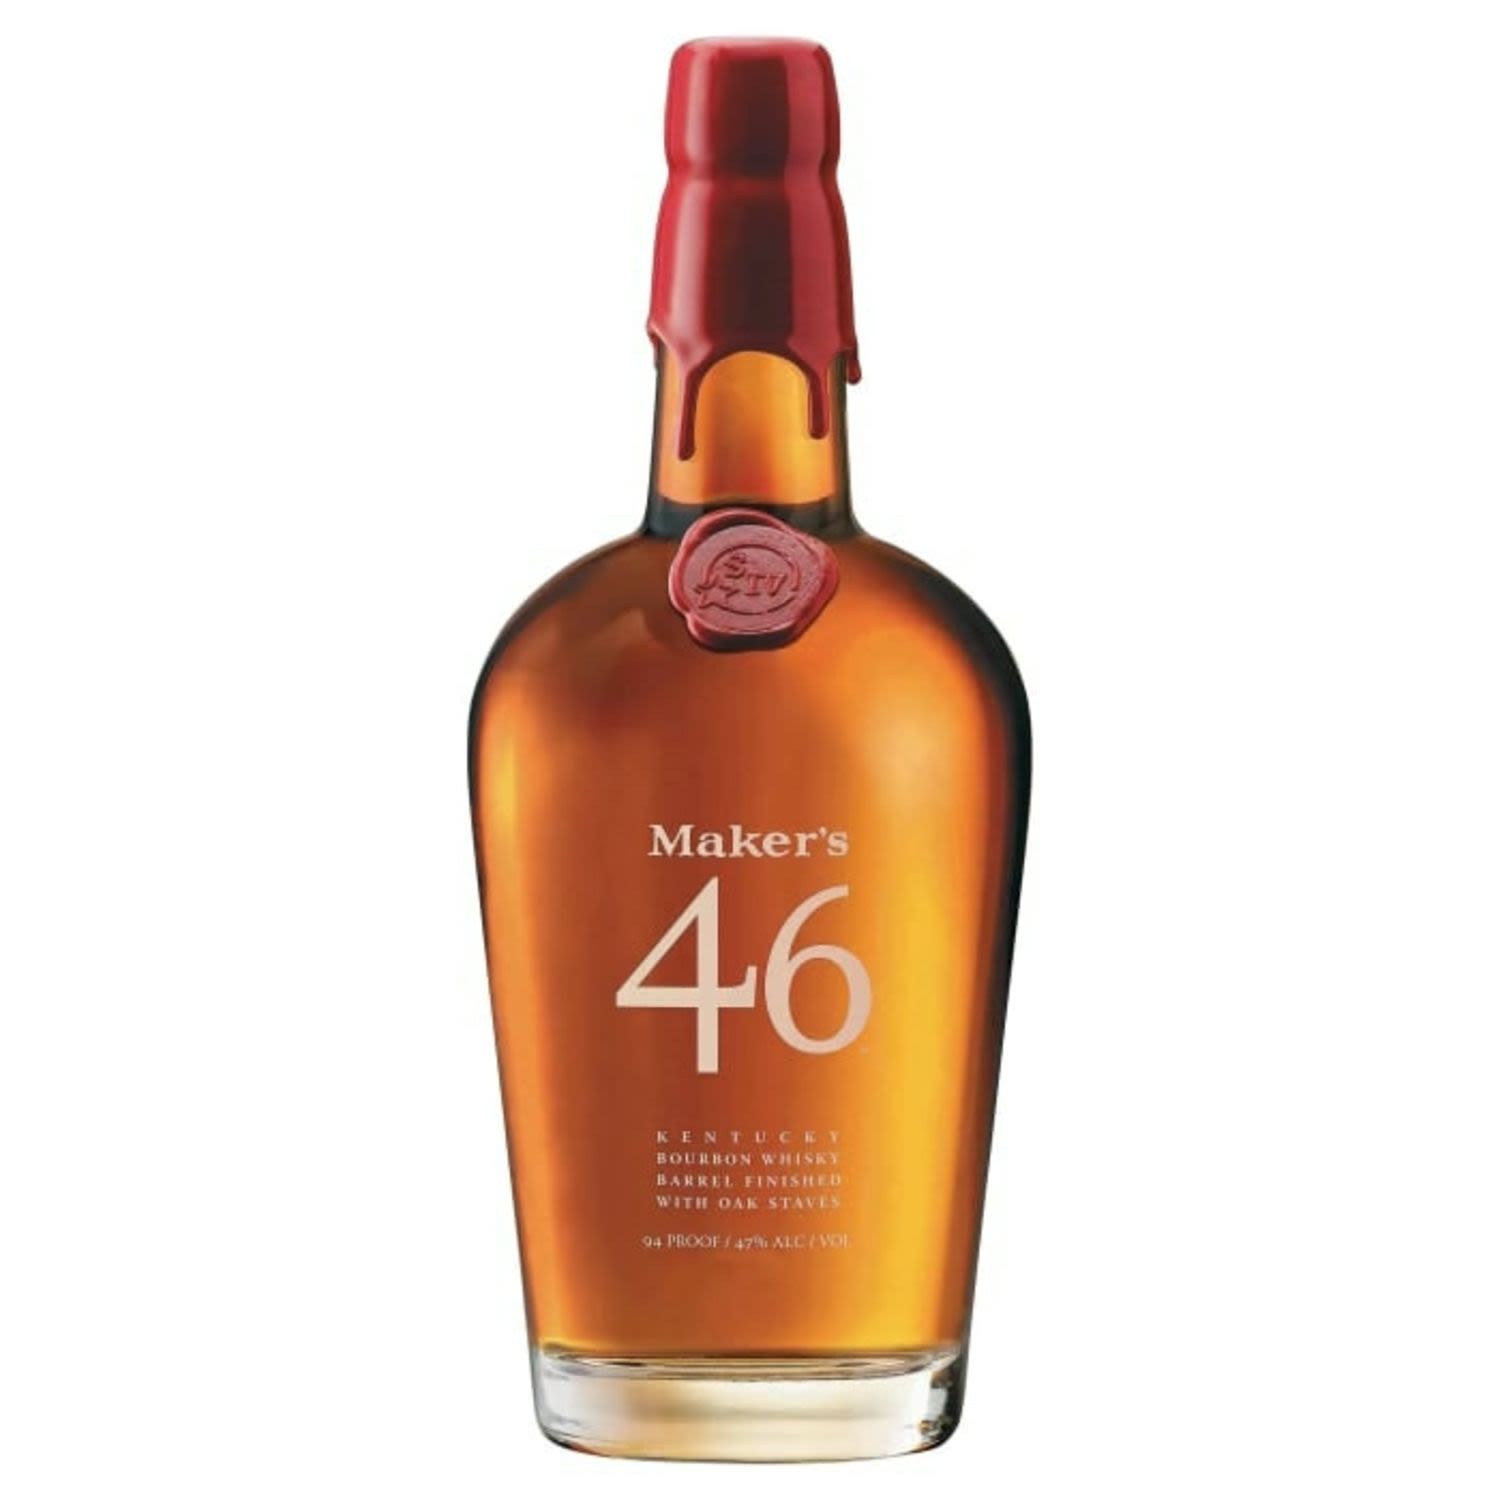 Maker's Mark 46 Barrel Finished Kentucky Straight Bourbon Whisky 700mL Bottle